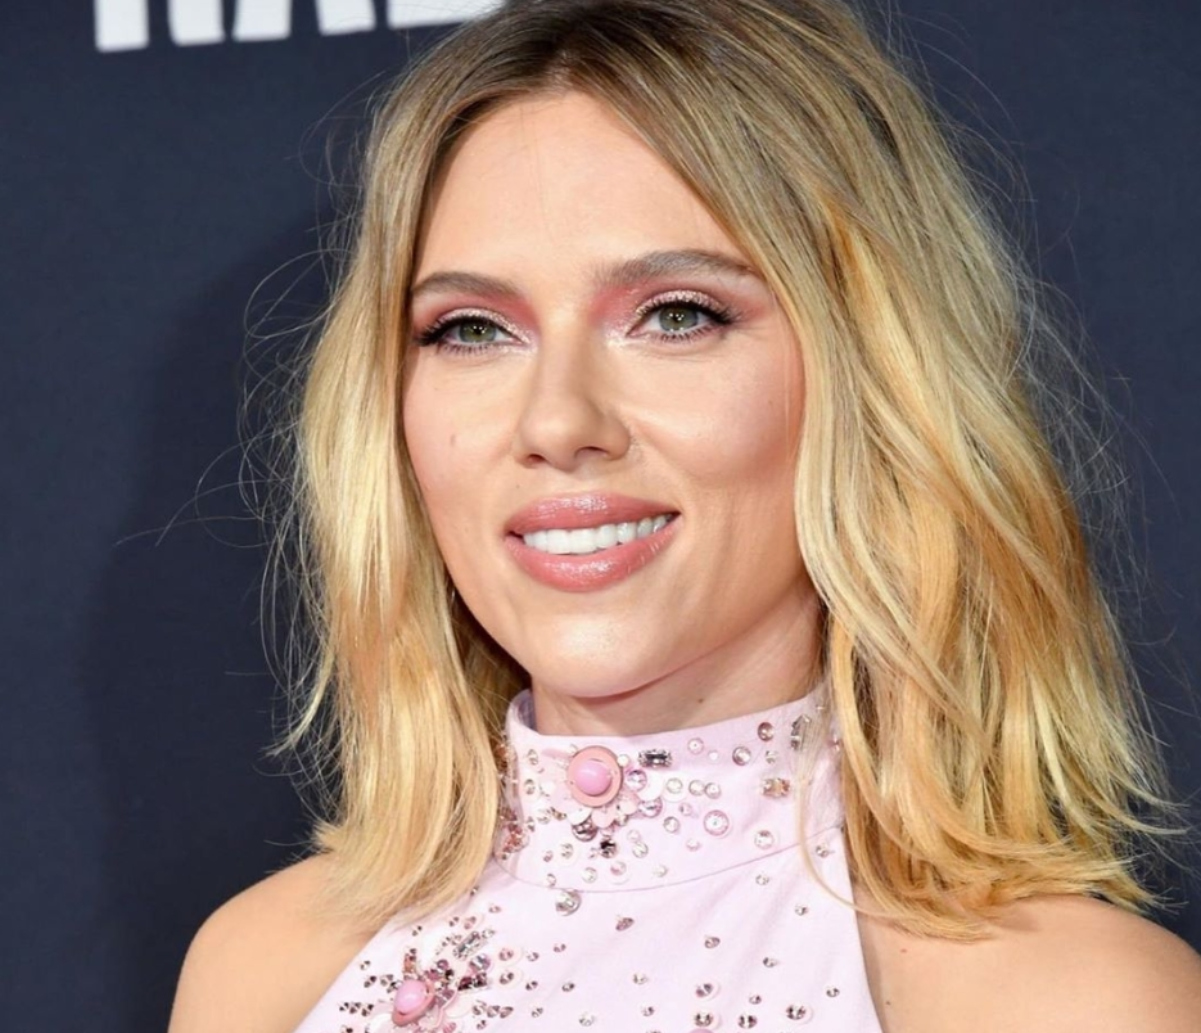 Critican a Scarlett Johansson por mostrar celulitis